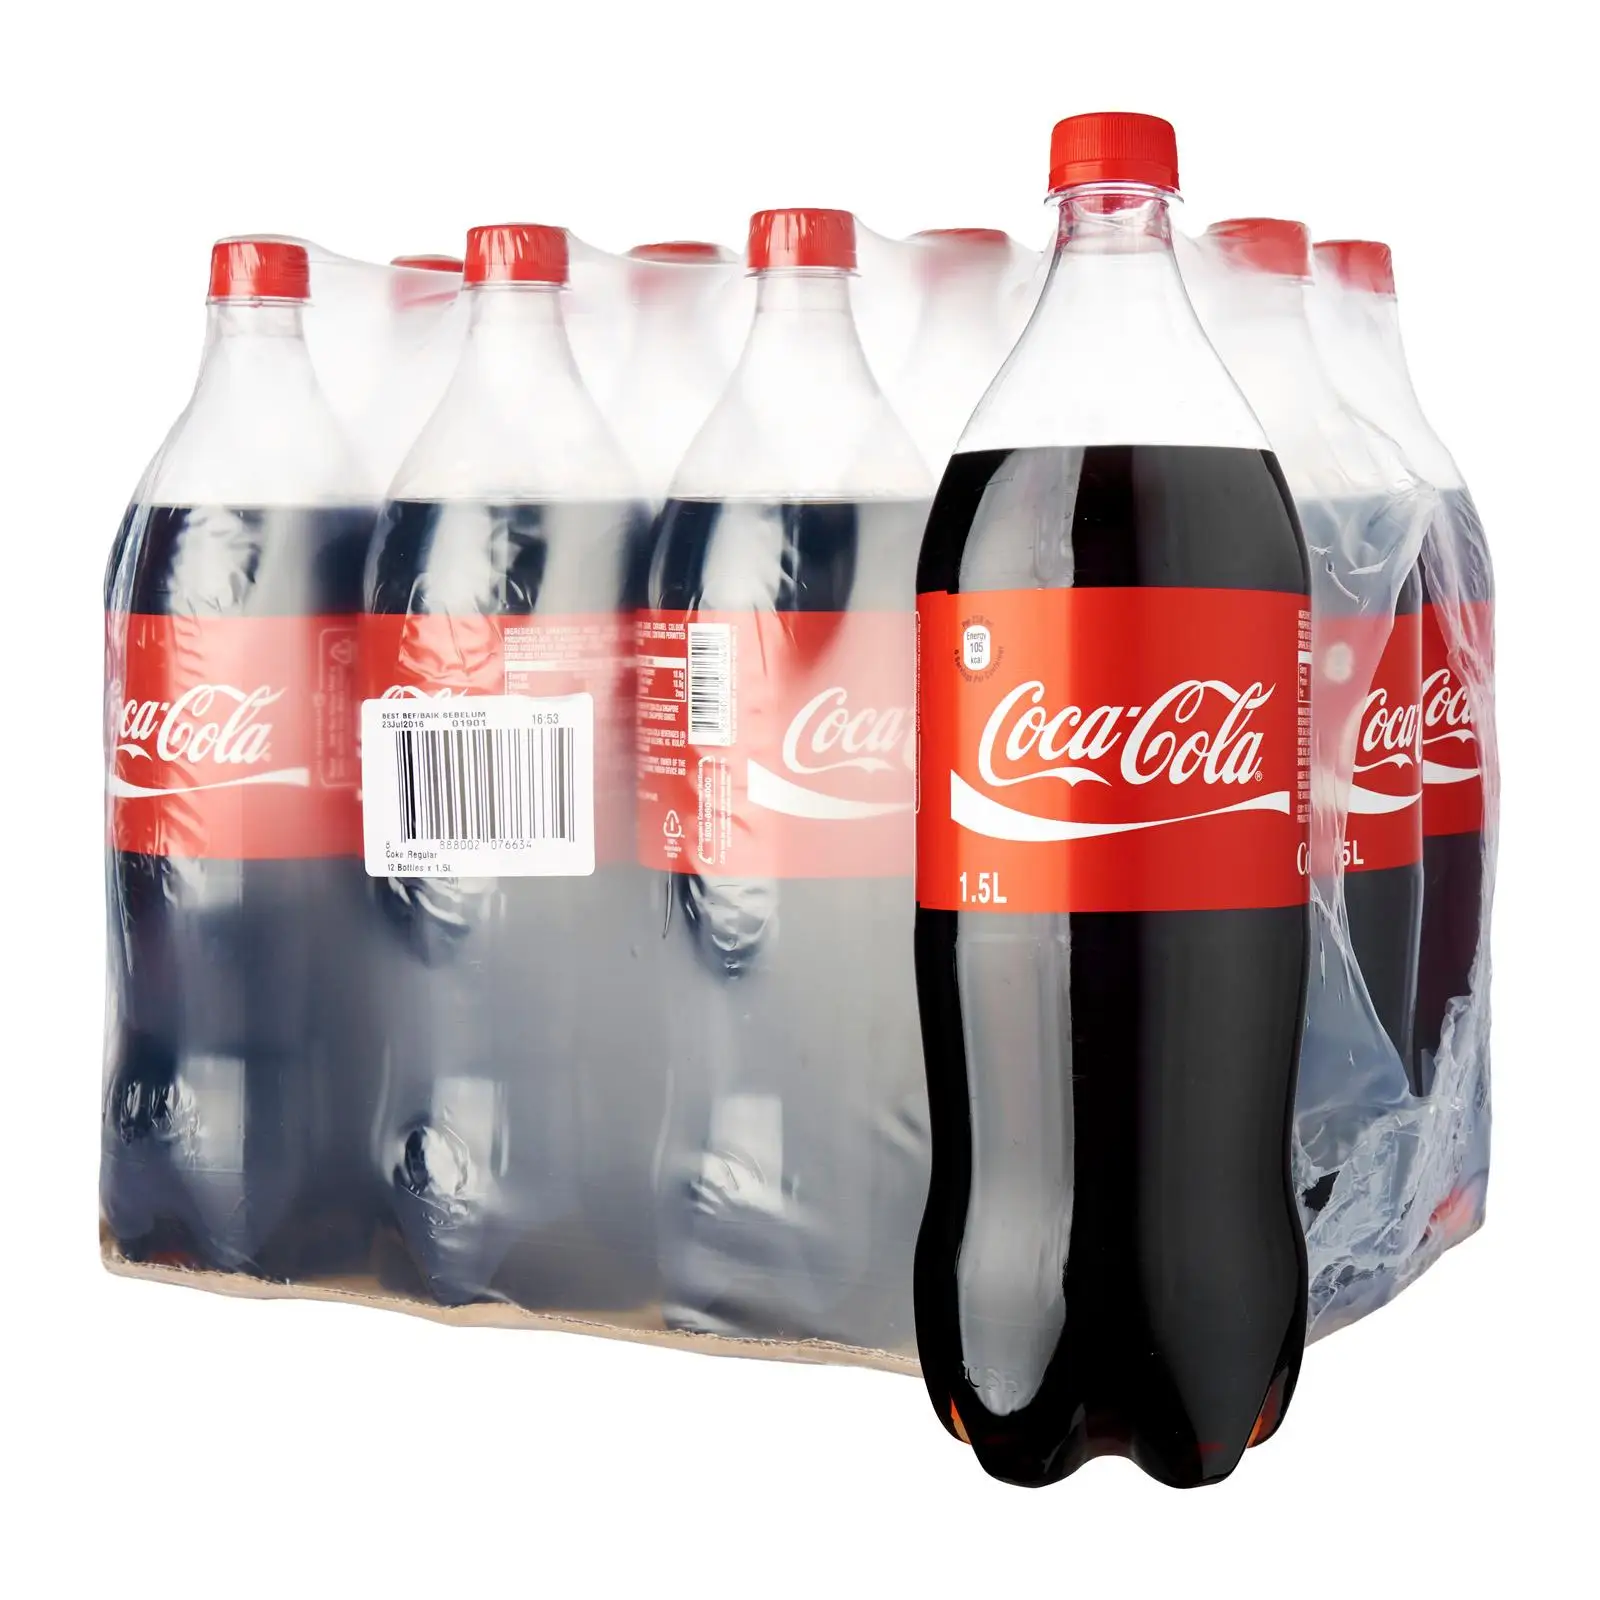 Сколько бутылок воды в упаковке. Coca Cola 1.5 l. Упаковка Кока кола 0.9л. Coca-Cola 1.5л. Напиток Coca-Cola 1.5л.